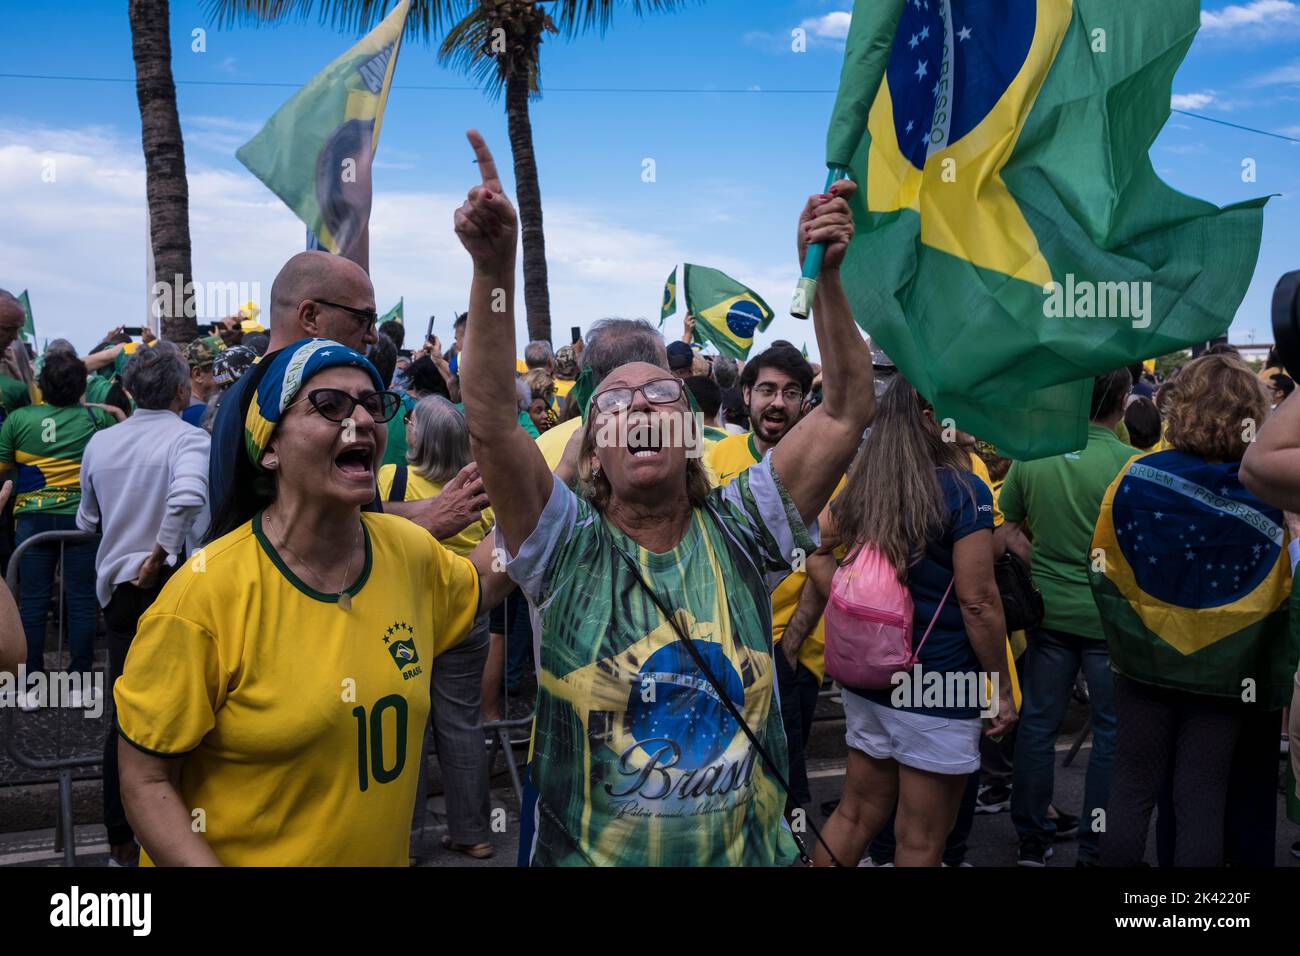 Les partisans de Bolsonaro tiennent une manifestation politique sur la plage de Copacabana à la date de la célébration des 200 ans d'indépendance du Brésil. Le démonstrateur offense et maudit un résident qui a exprimé sa sympathie pour le candidat à la présidence Luis Inácio Lula da Silva. Banque D'Images